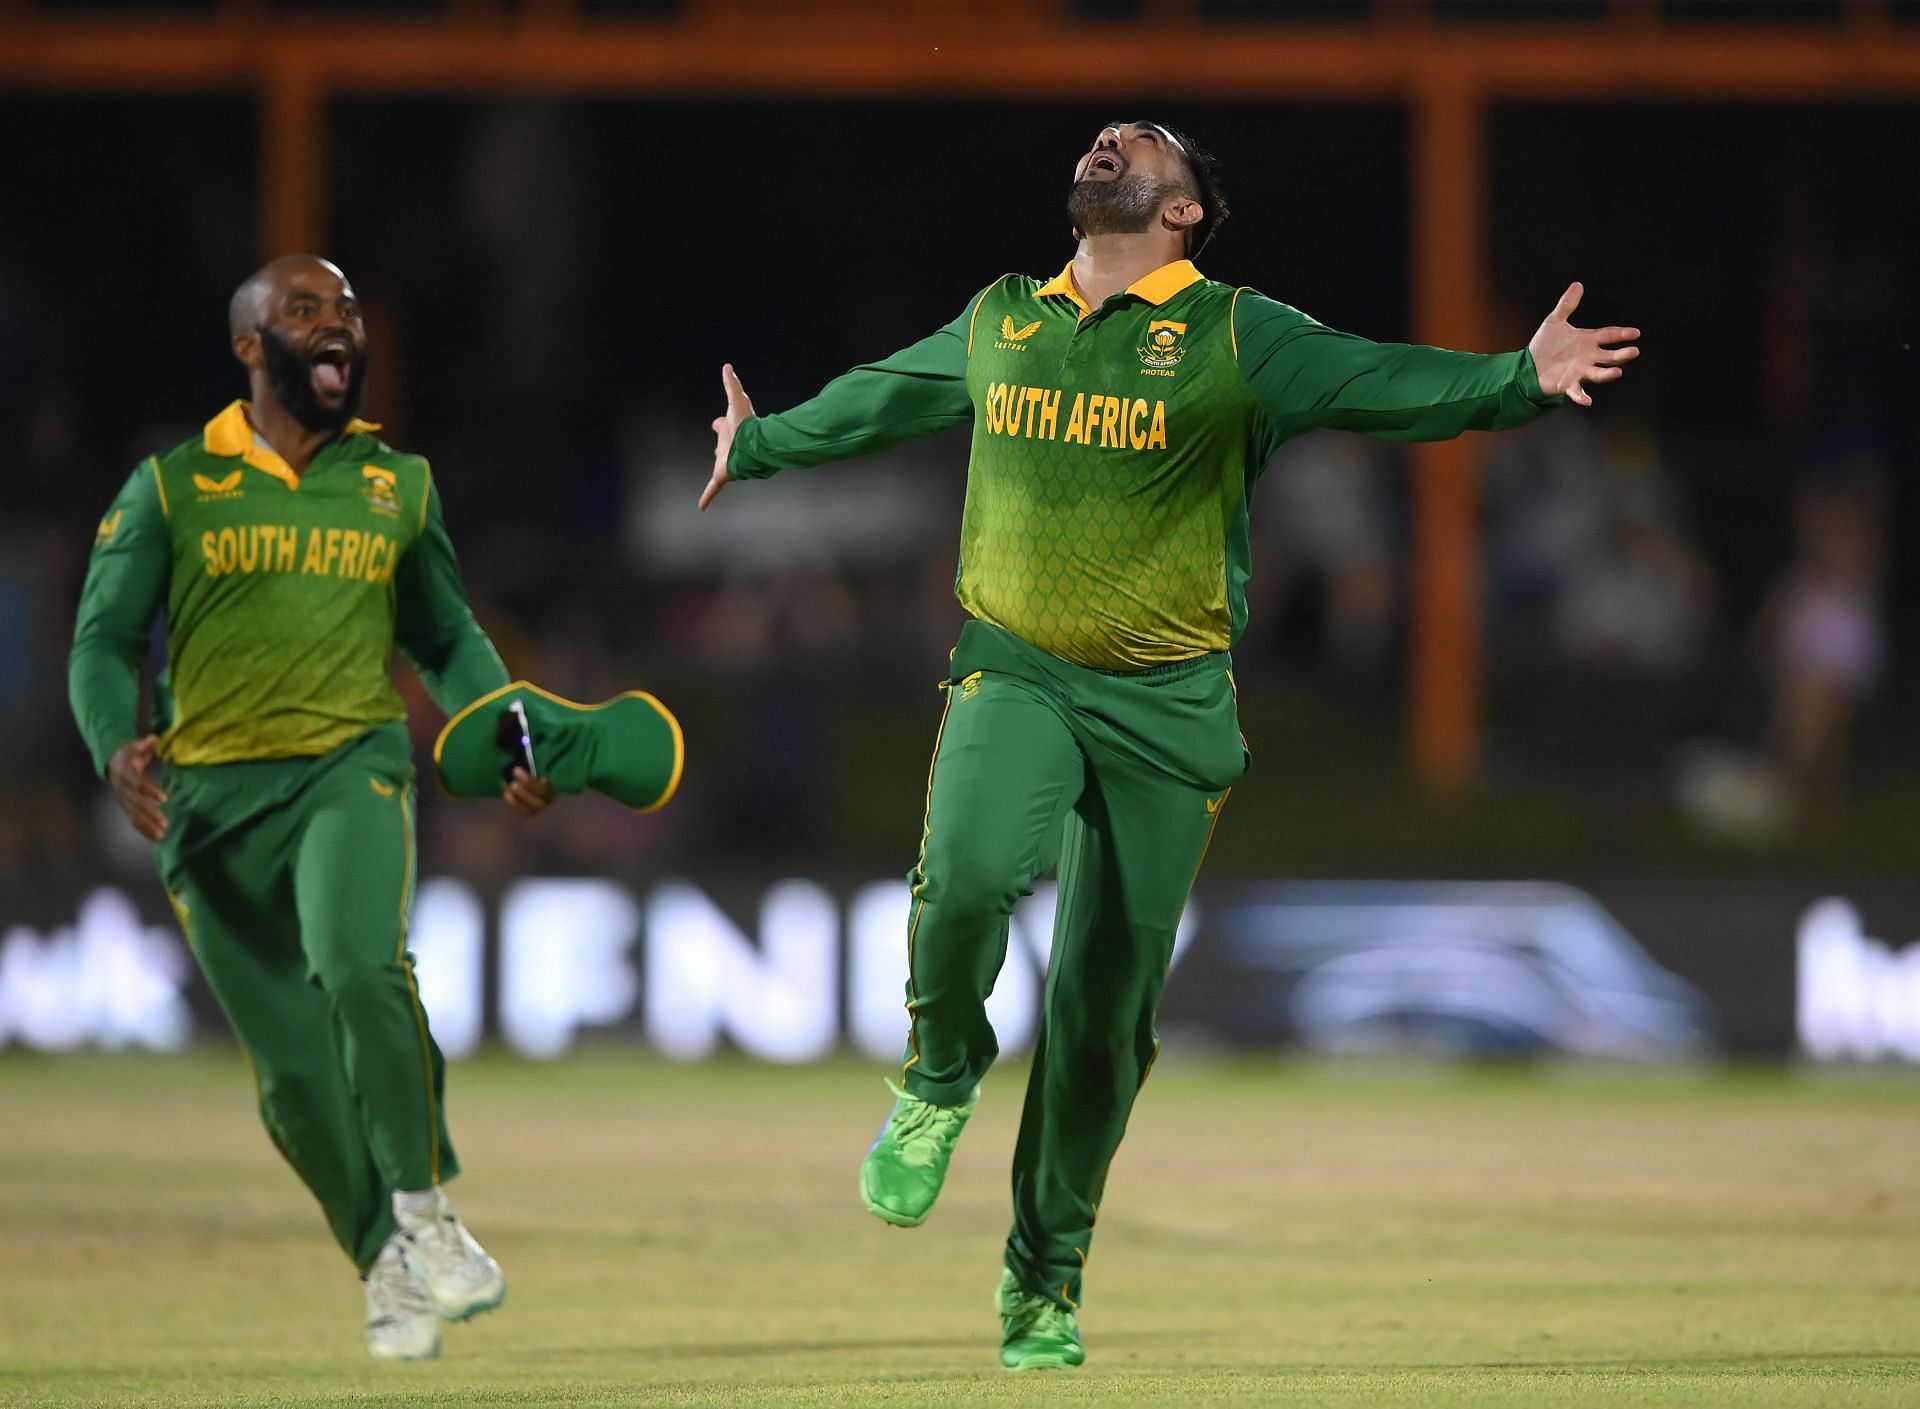 Tabraiz Shamsi (right) celebrating a wicket with captain Temba Bavuma (left).